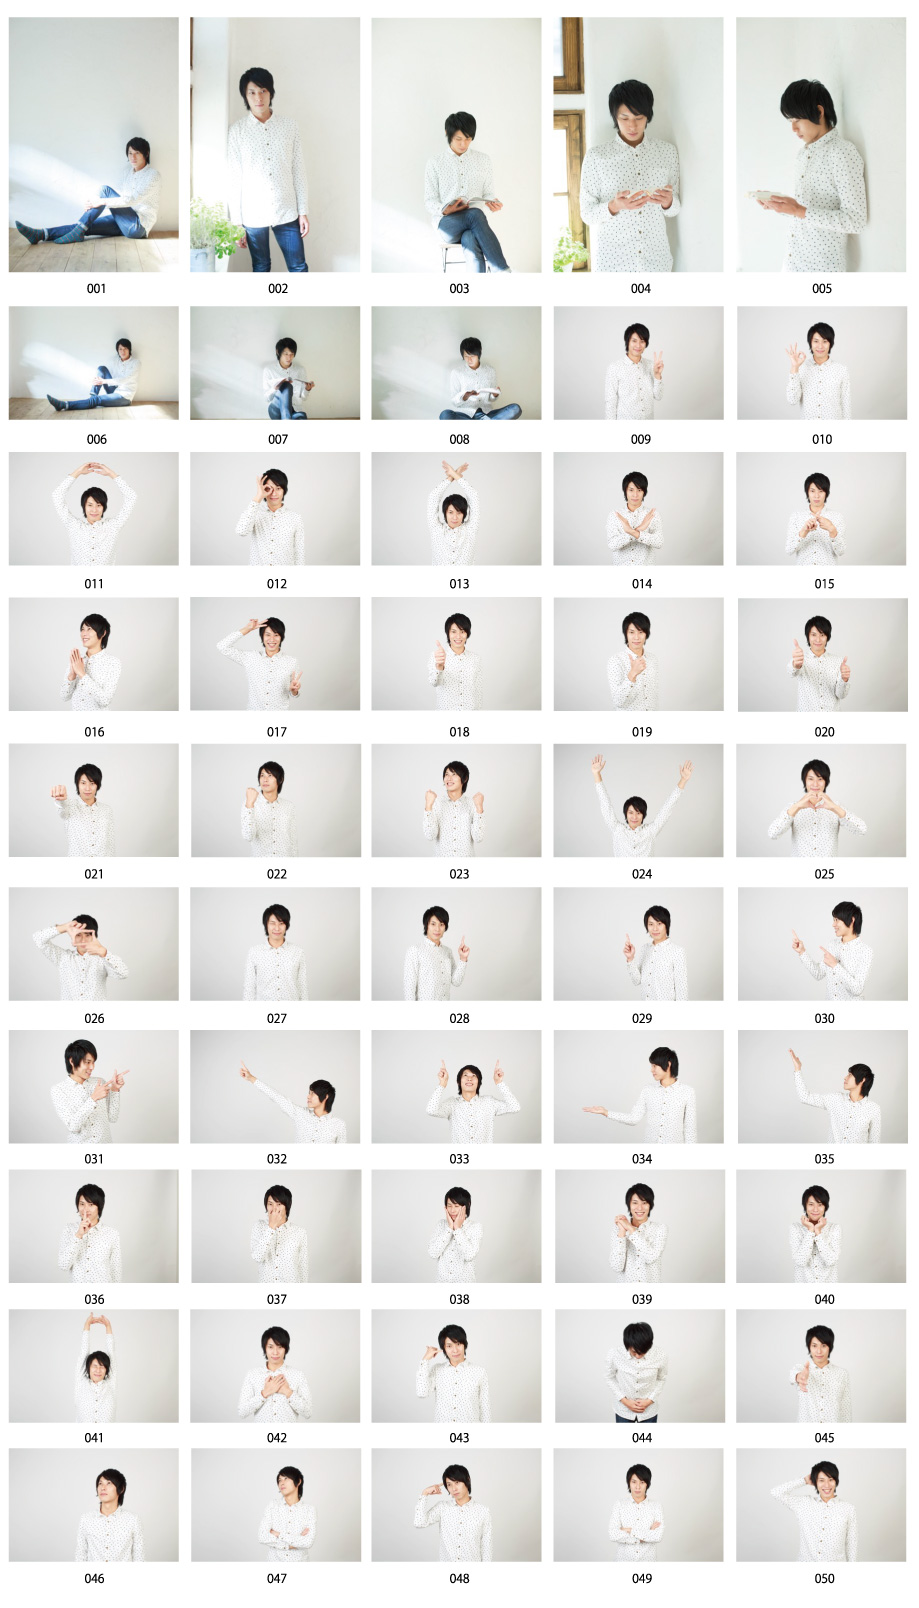 ชายชาวญี่ปุ่น 50 คนวางตัวรูปภาพวัสดุเล่มที่ 1